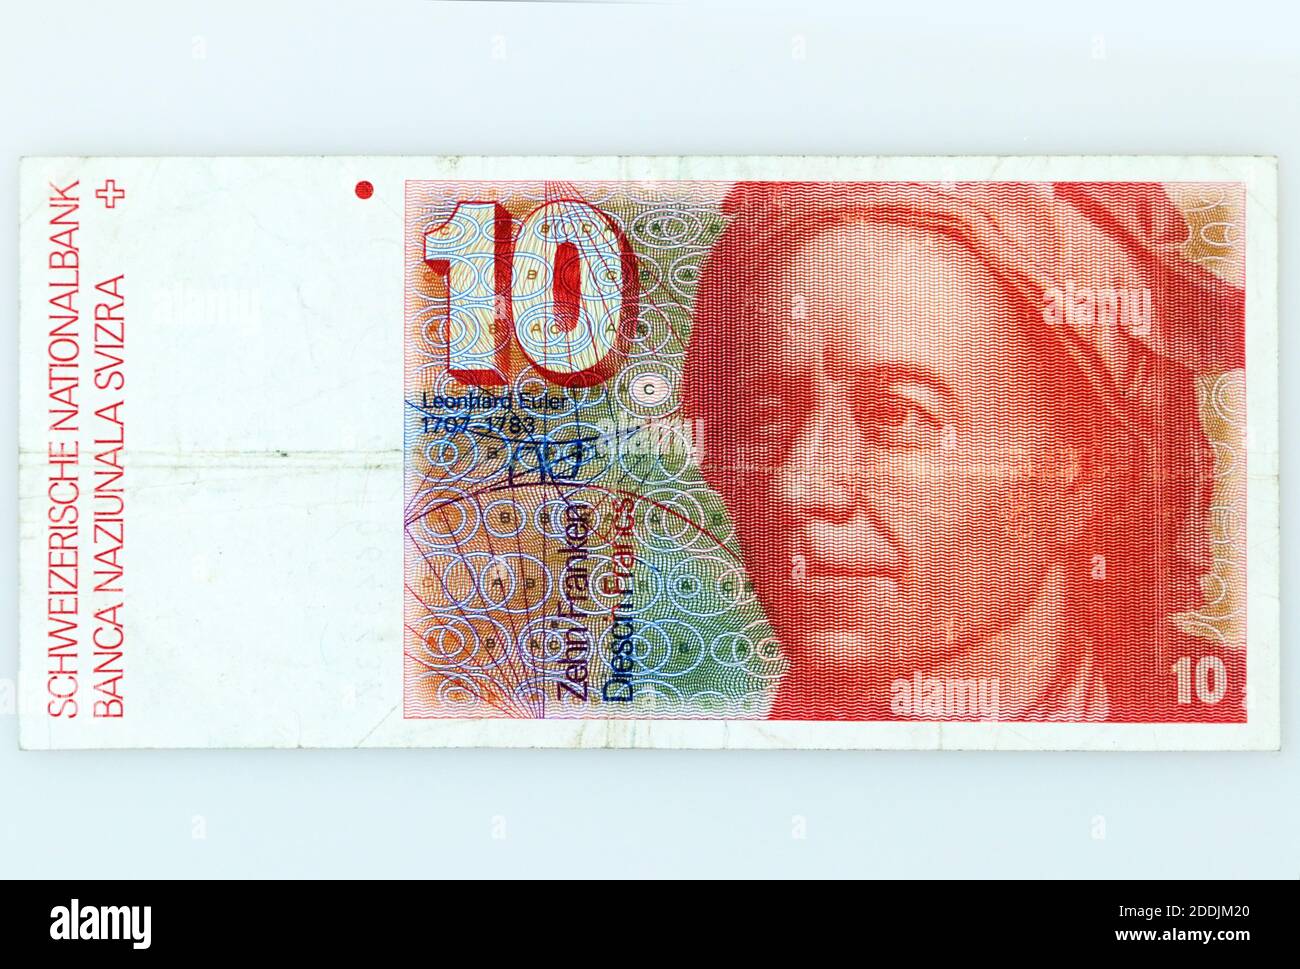 Швейцарские франки в рубли. 10 Швейцарских франков. 10 Швейцарских франков в рублях. Швейцарский Франк водяной знак. Банкнота с Эйлером.